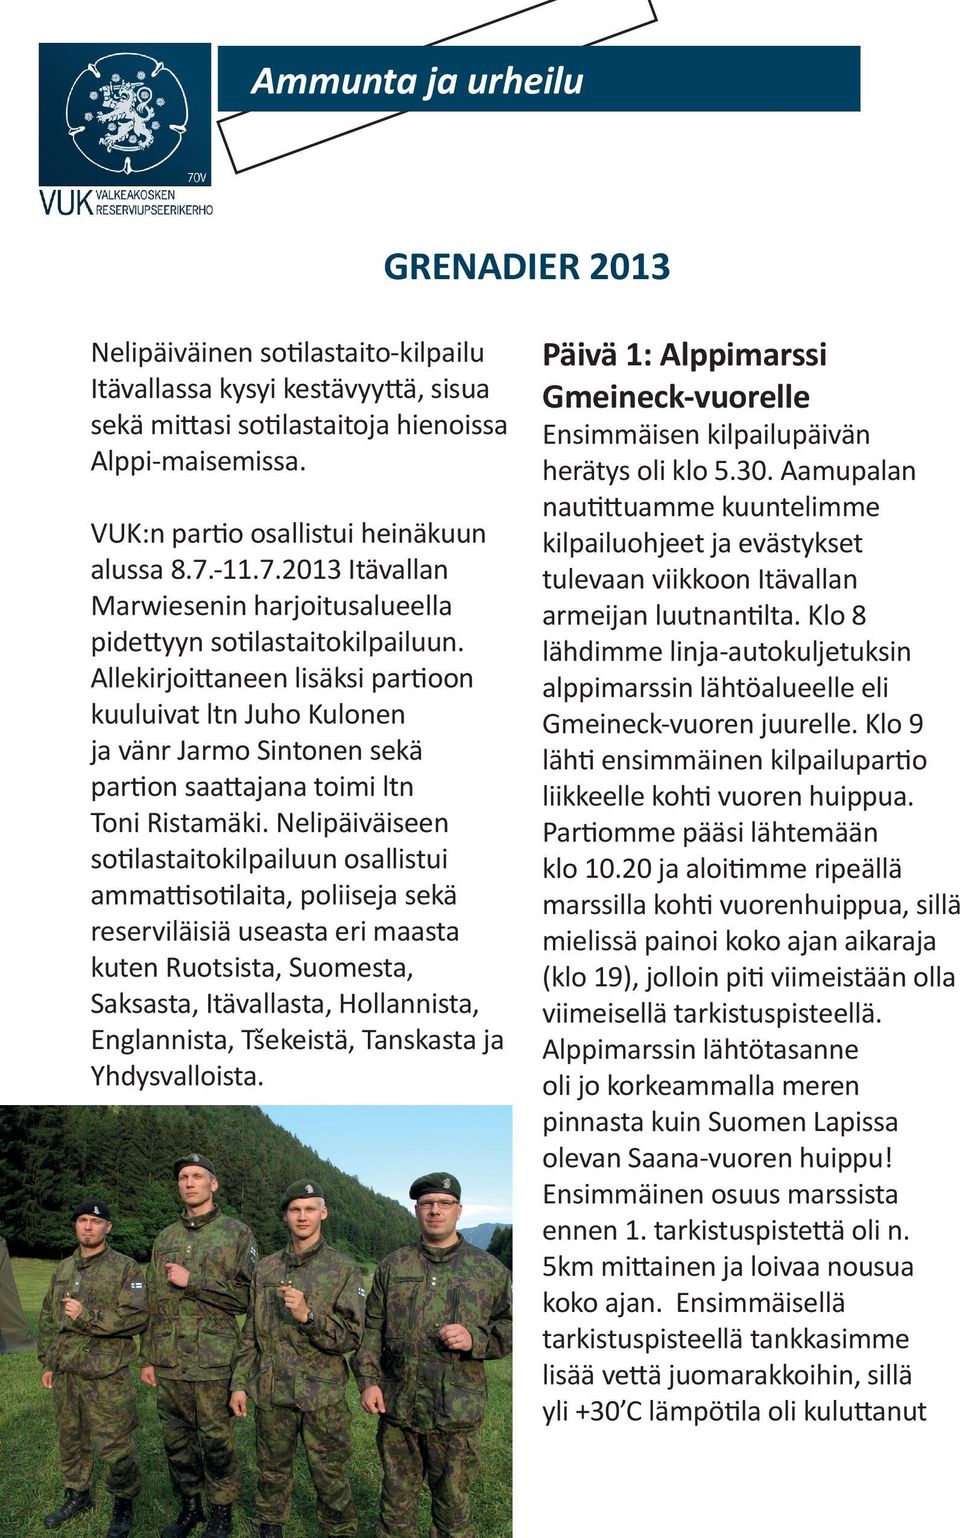 Allekirjoittaneen lisäksi partioon kuuluivat ltn Juho Kulonen ja vänr Jarmo Sintonen sekä partion saattajana toimi ltn Toni Ristamäki.